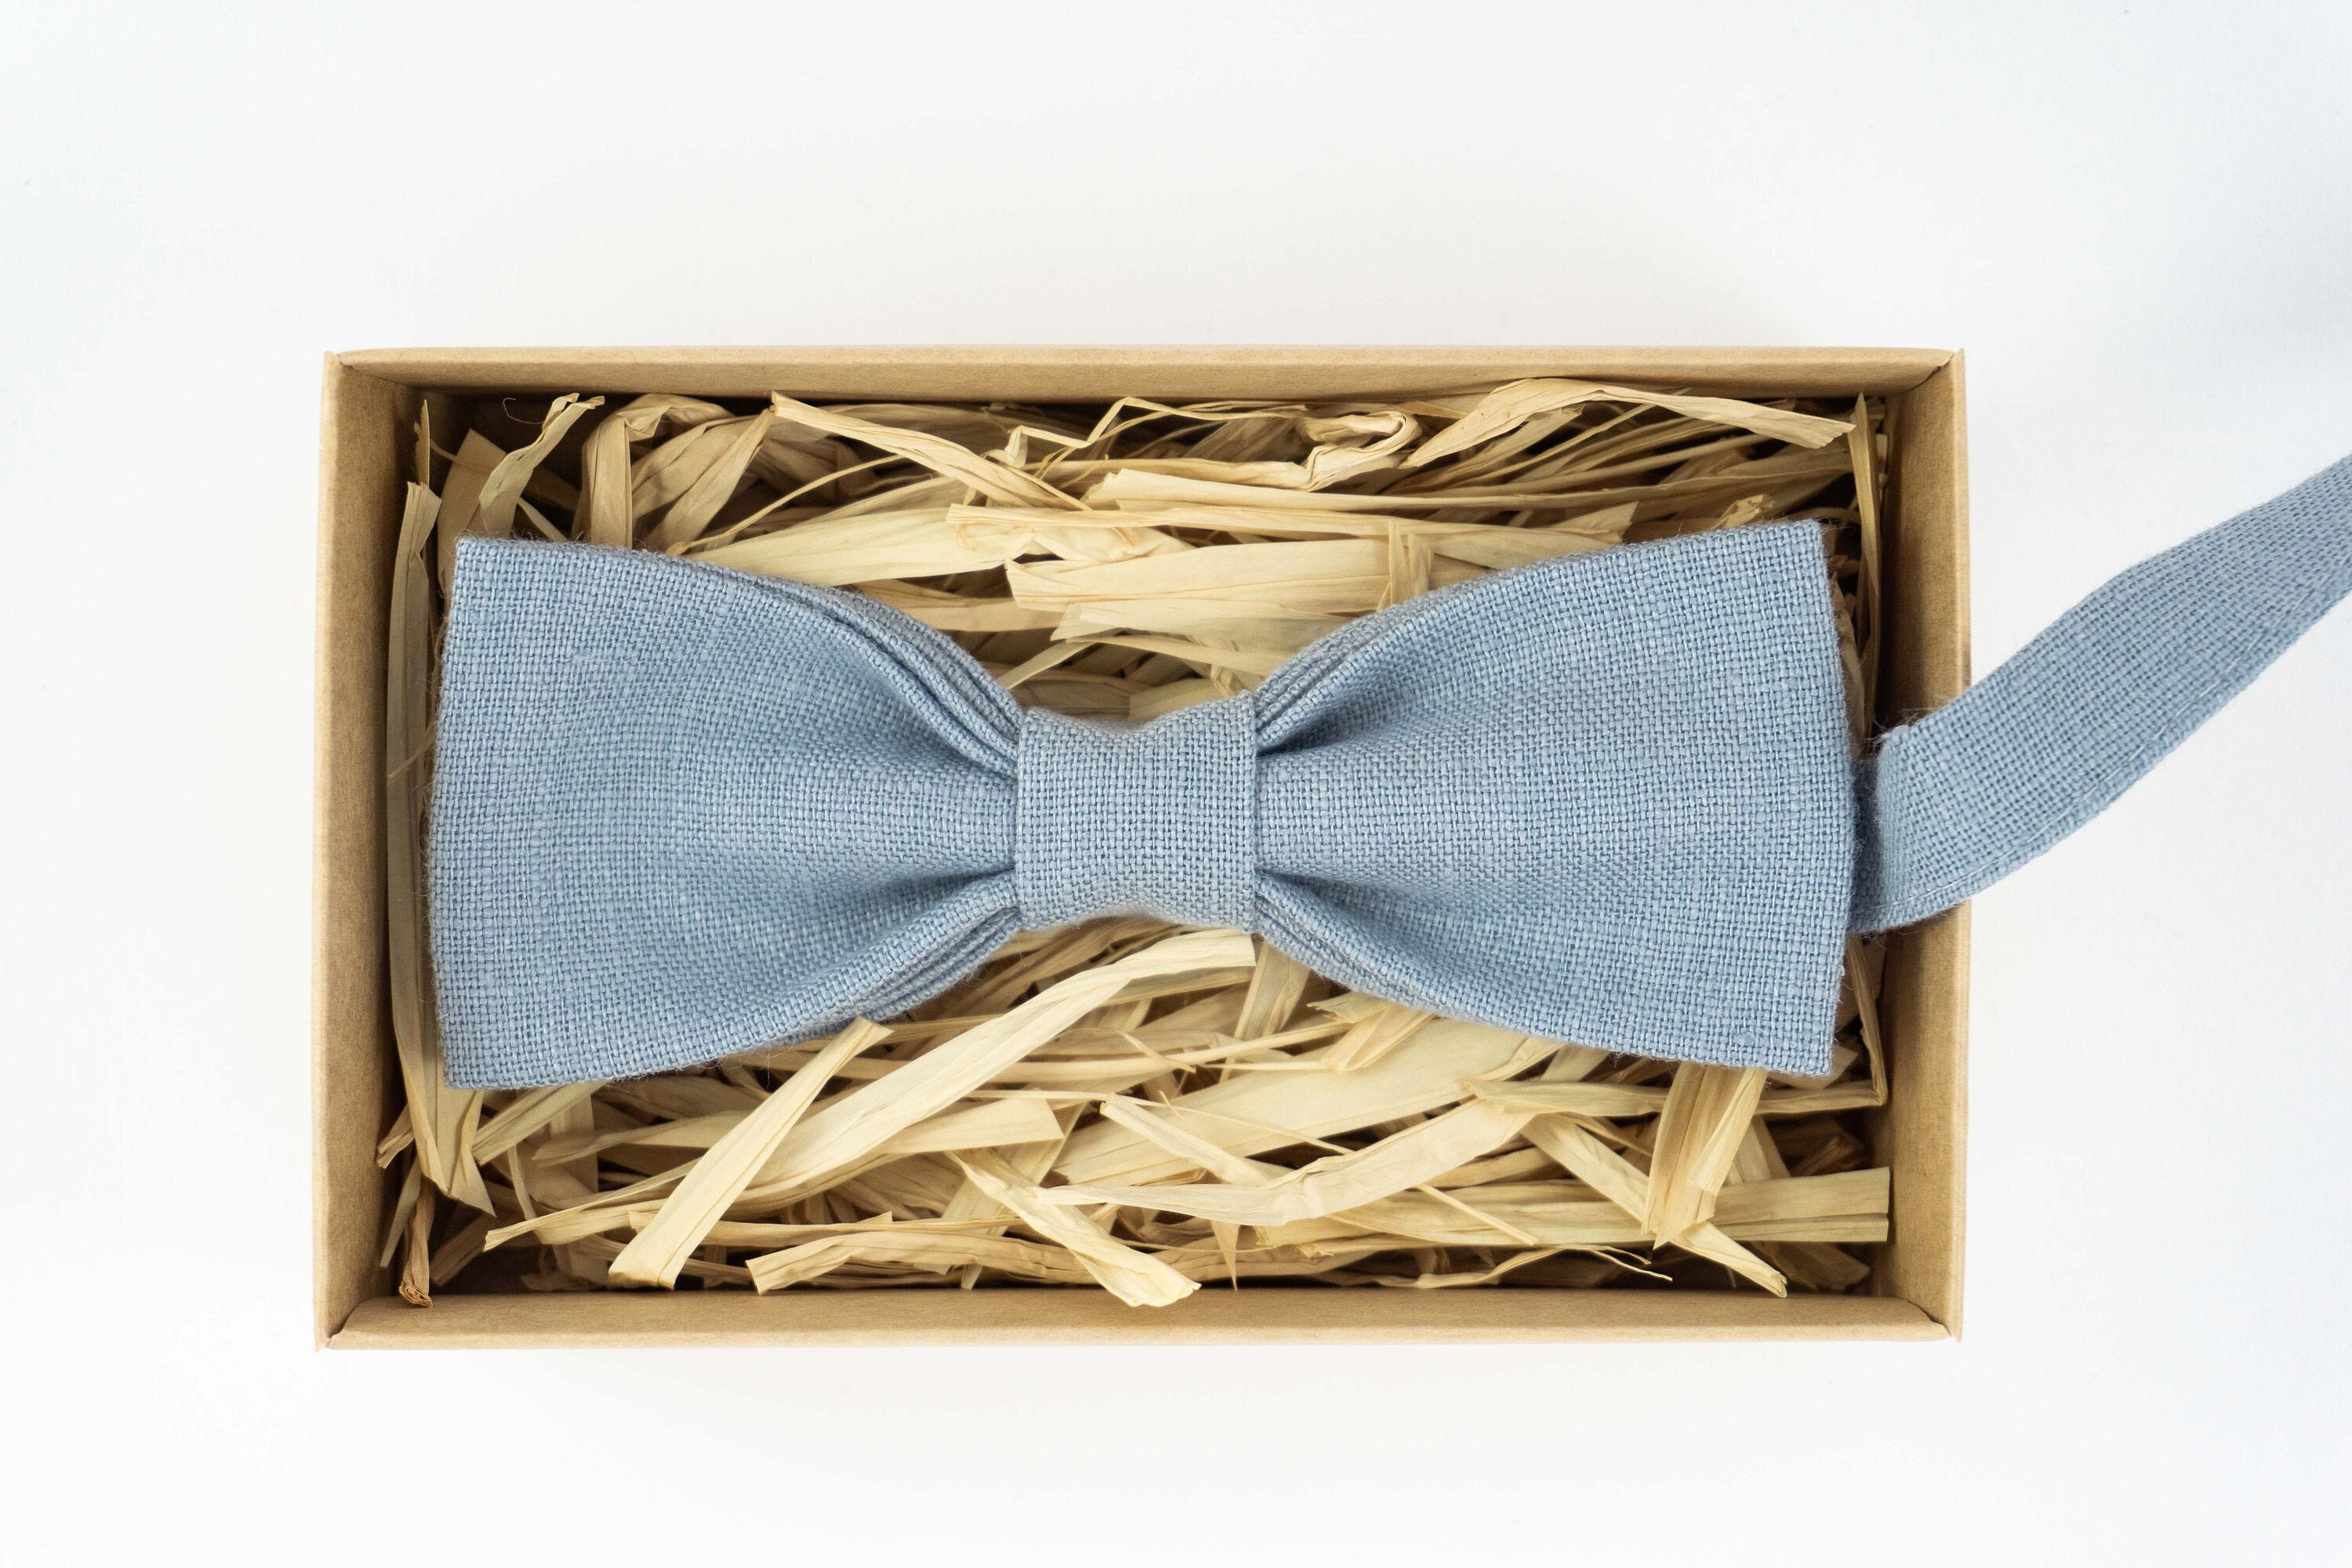 Dusty blue ties for men / Best mens ties / Wedding bow tie / | Etsy